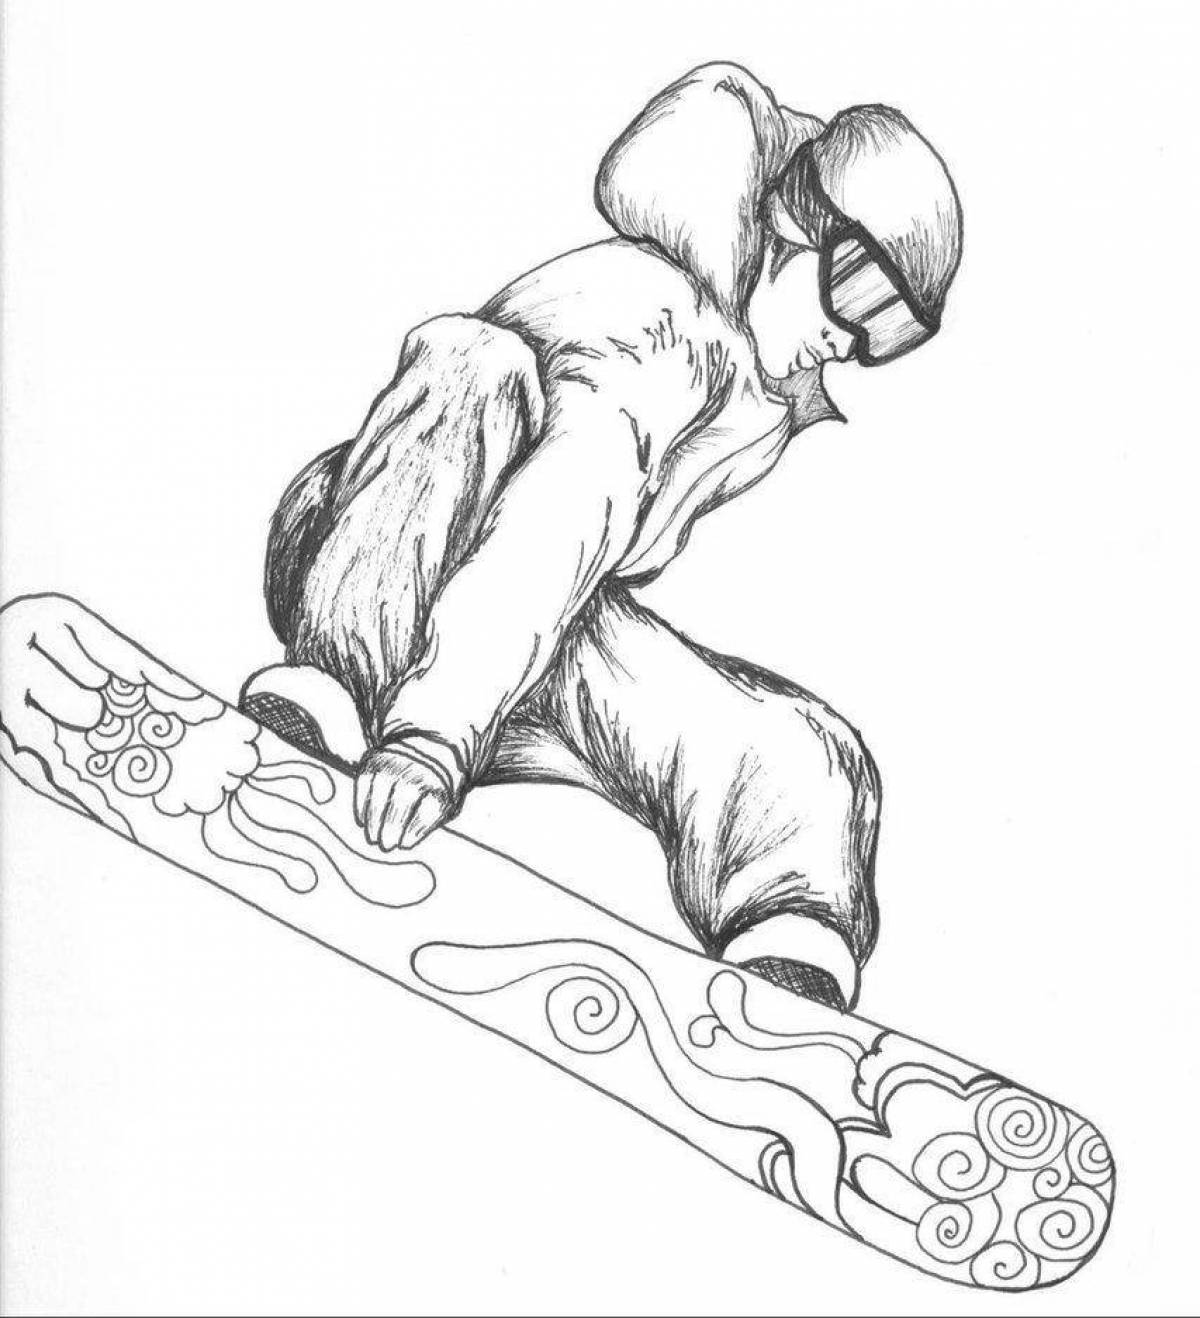 Сноуборд нарисованный